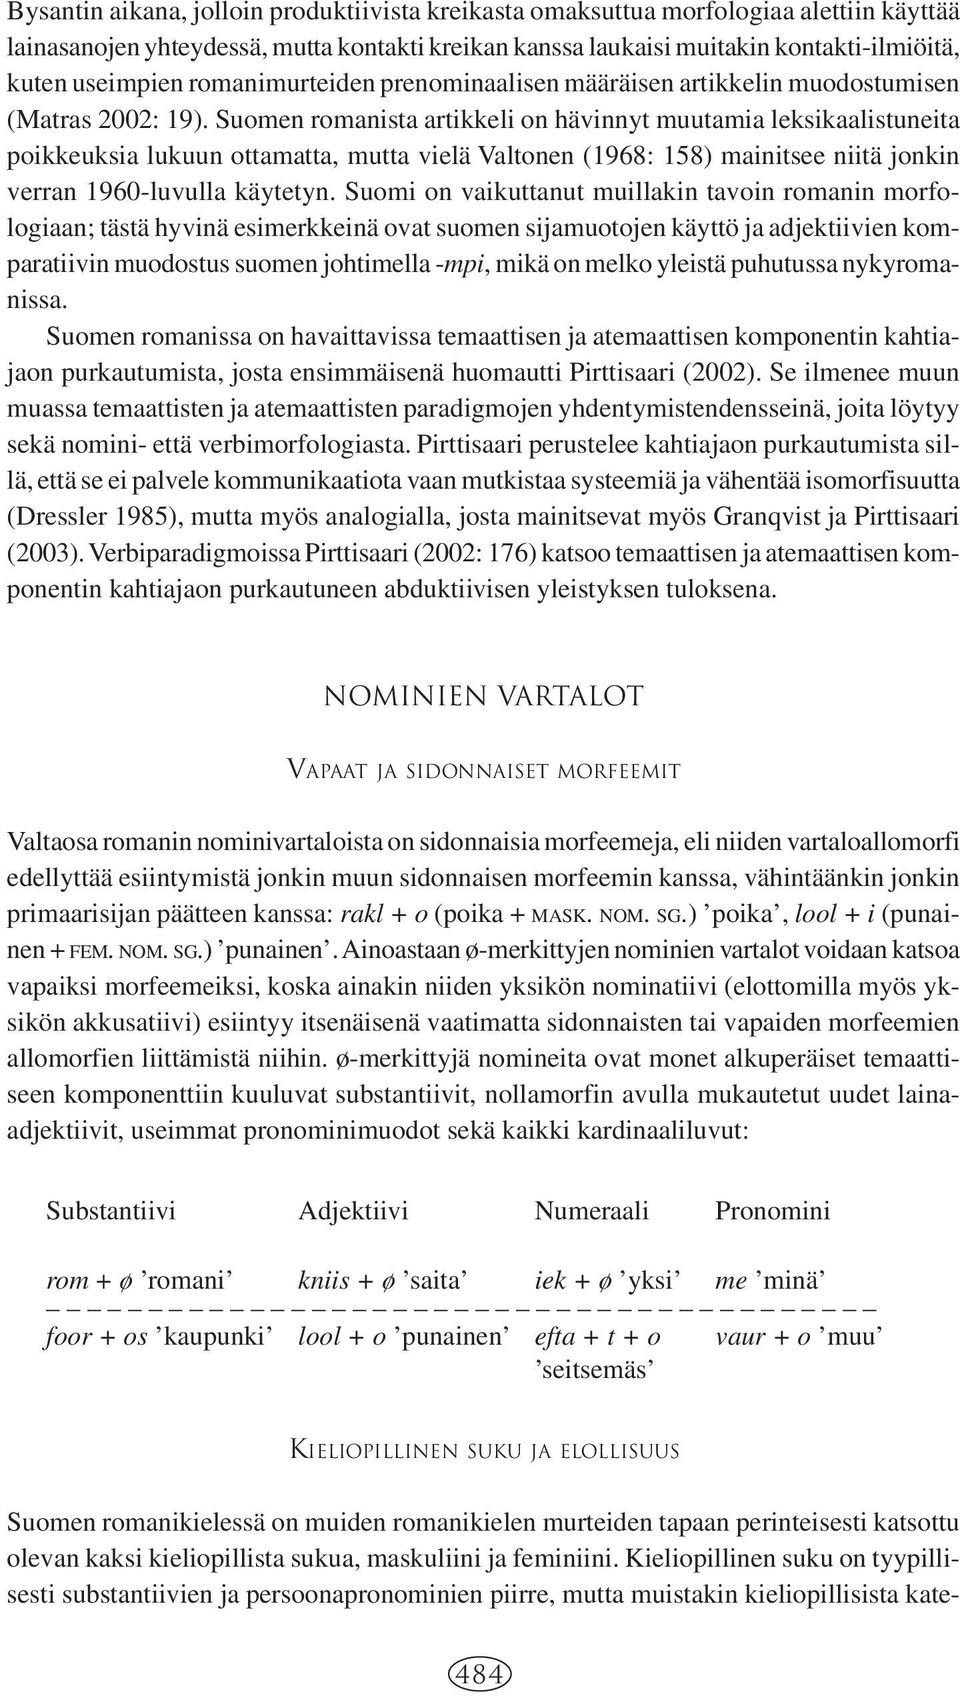 Suomen romanista artikkeli on hävinnyt muutamia leksikaalistuneita poikkeuksia lukuun ottamatta, mutta vielä Valtonen (1968: 158) mainitsee niitä jonkin verran 1960-luvulla käytetyn.